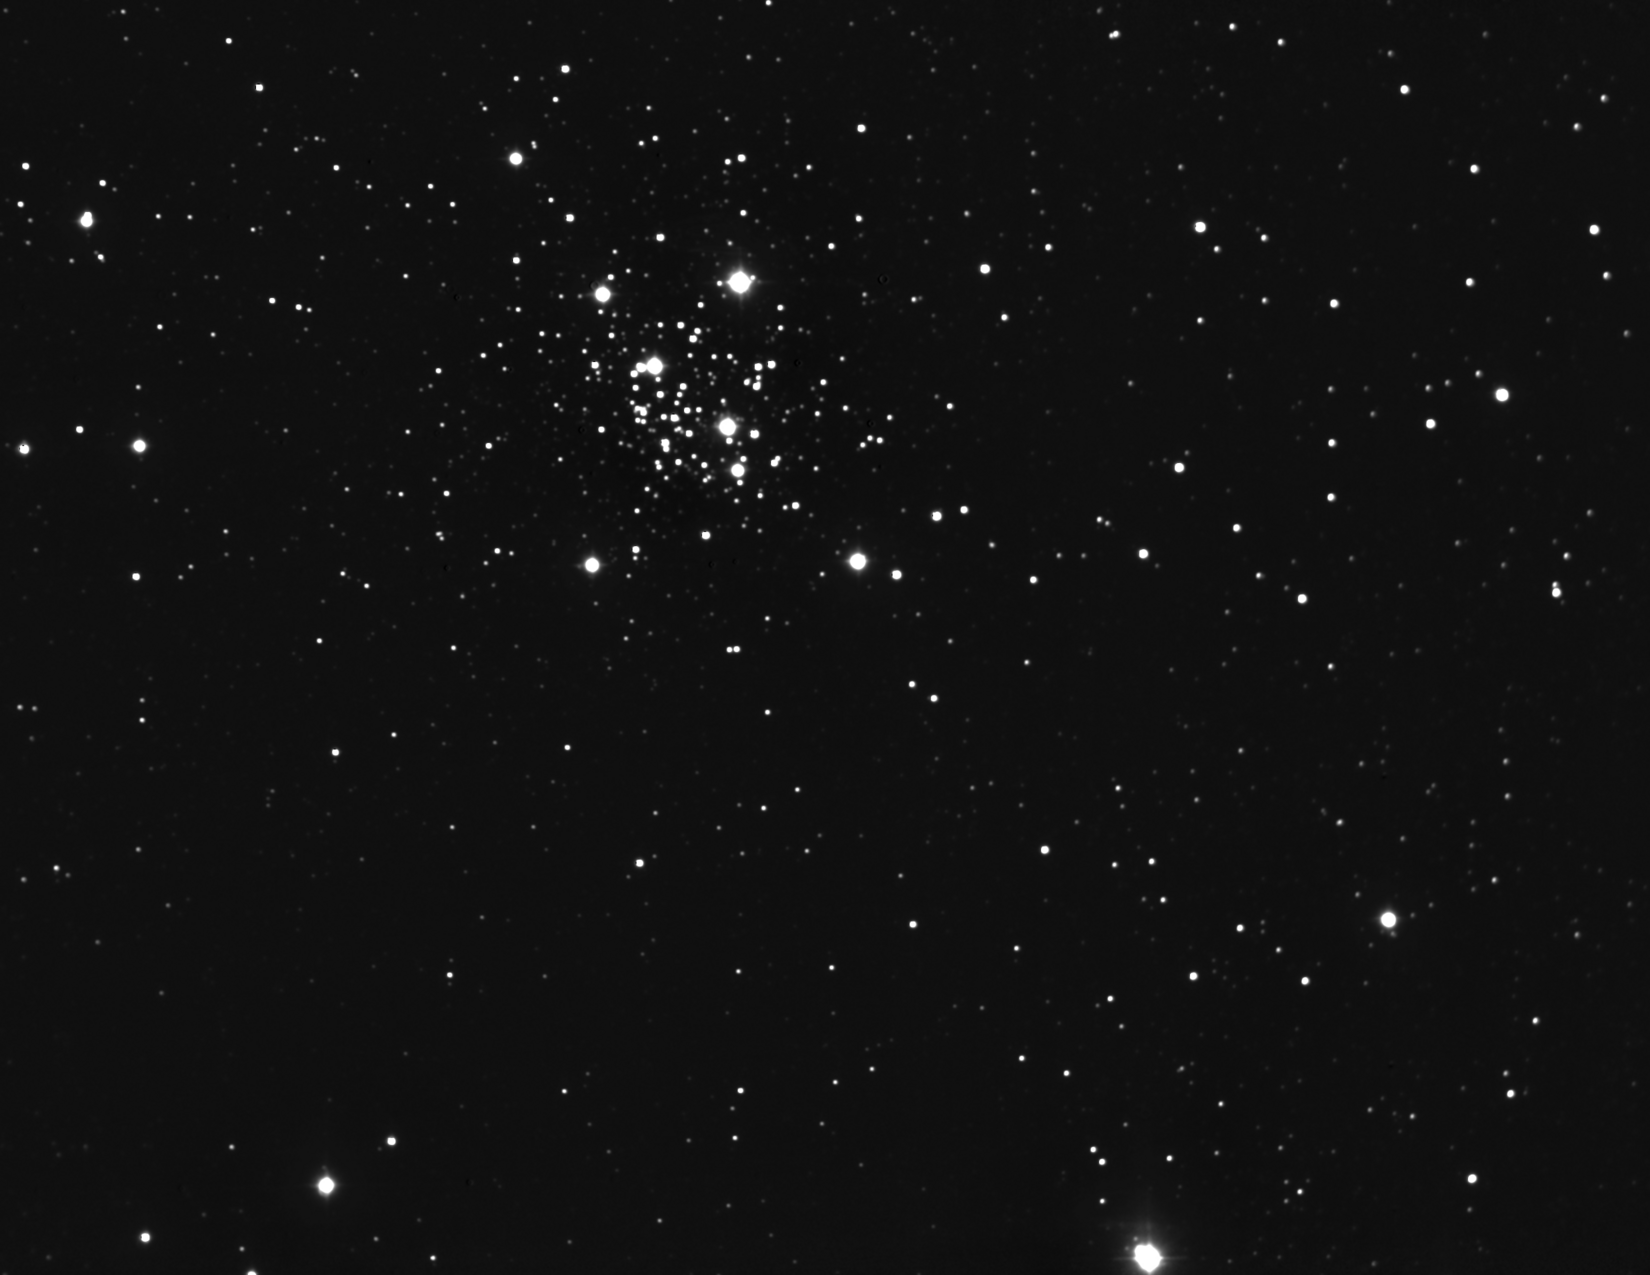 NGC 7419